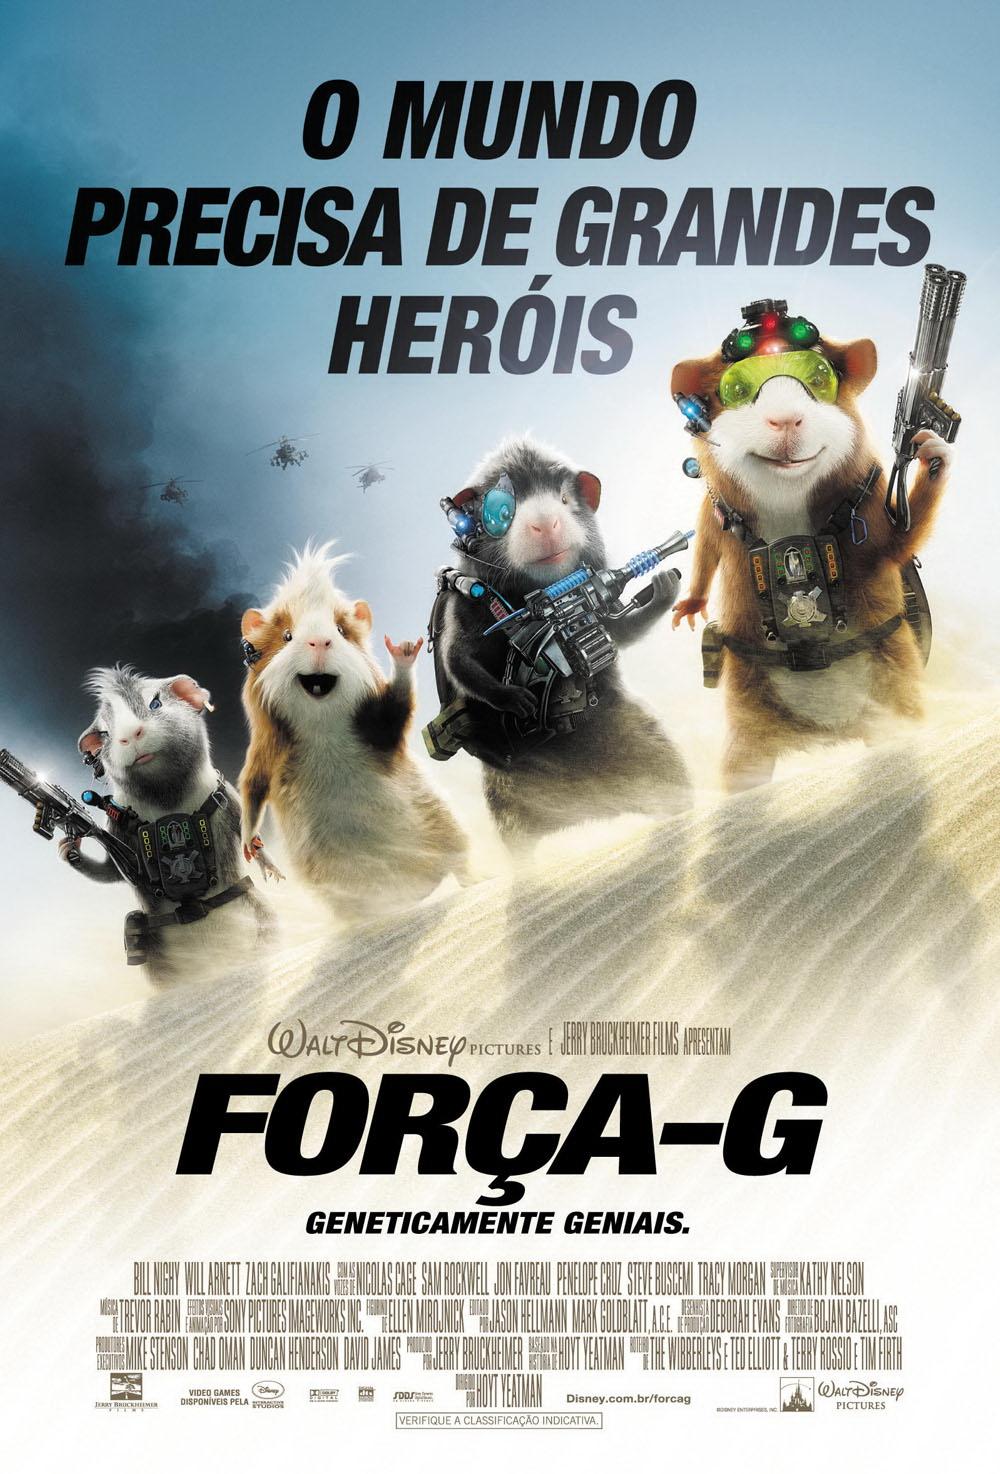 Постер фильма Миссия Дарвина | G-Force